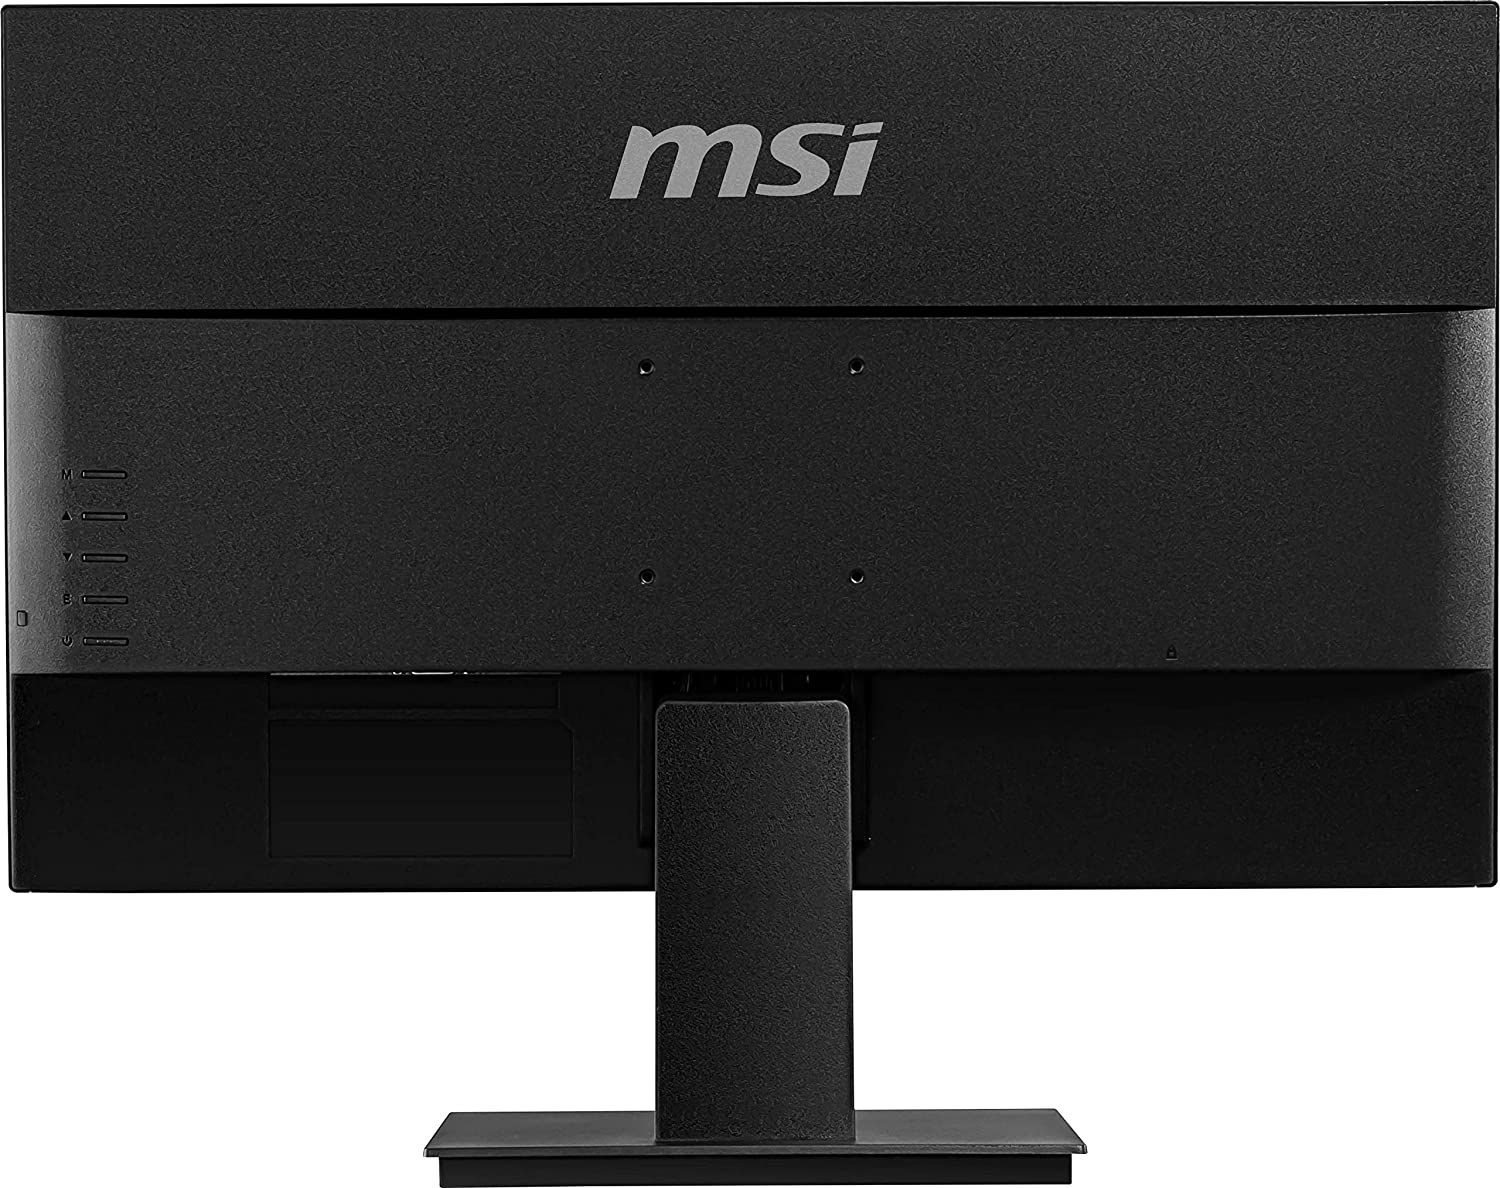 MSI Pro Professional MP241X Full HD 23.8